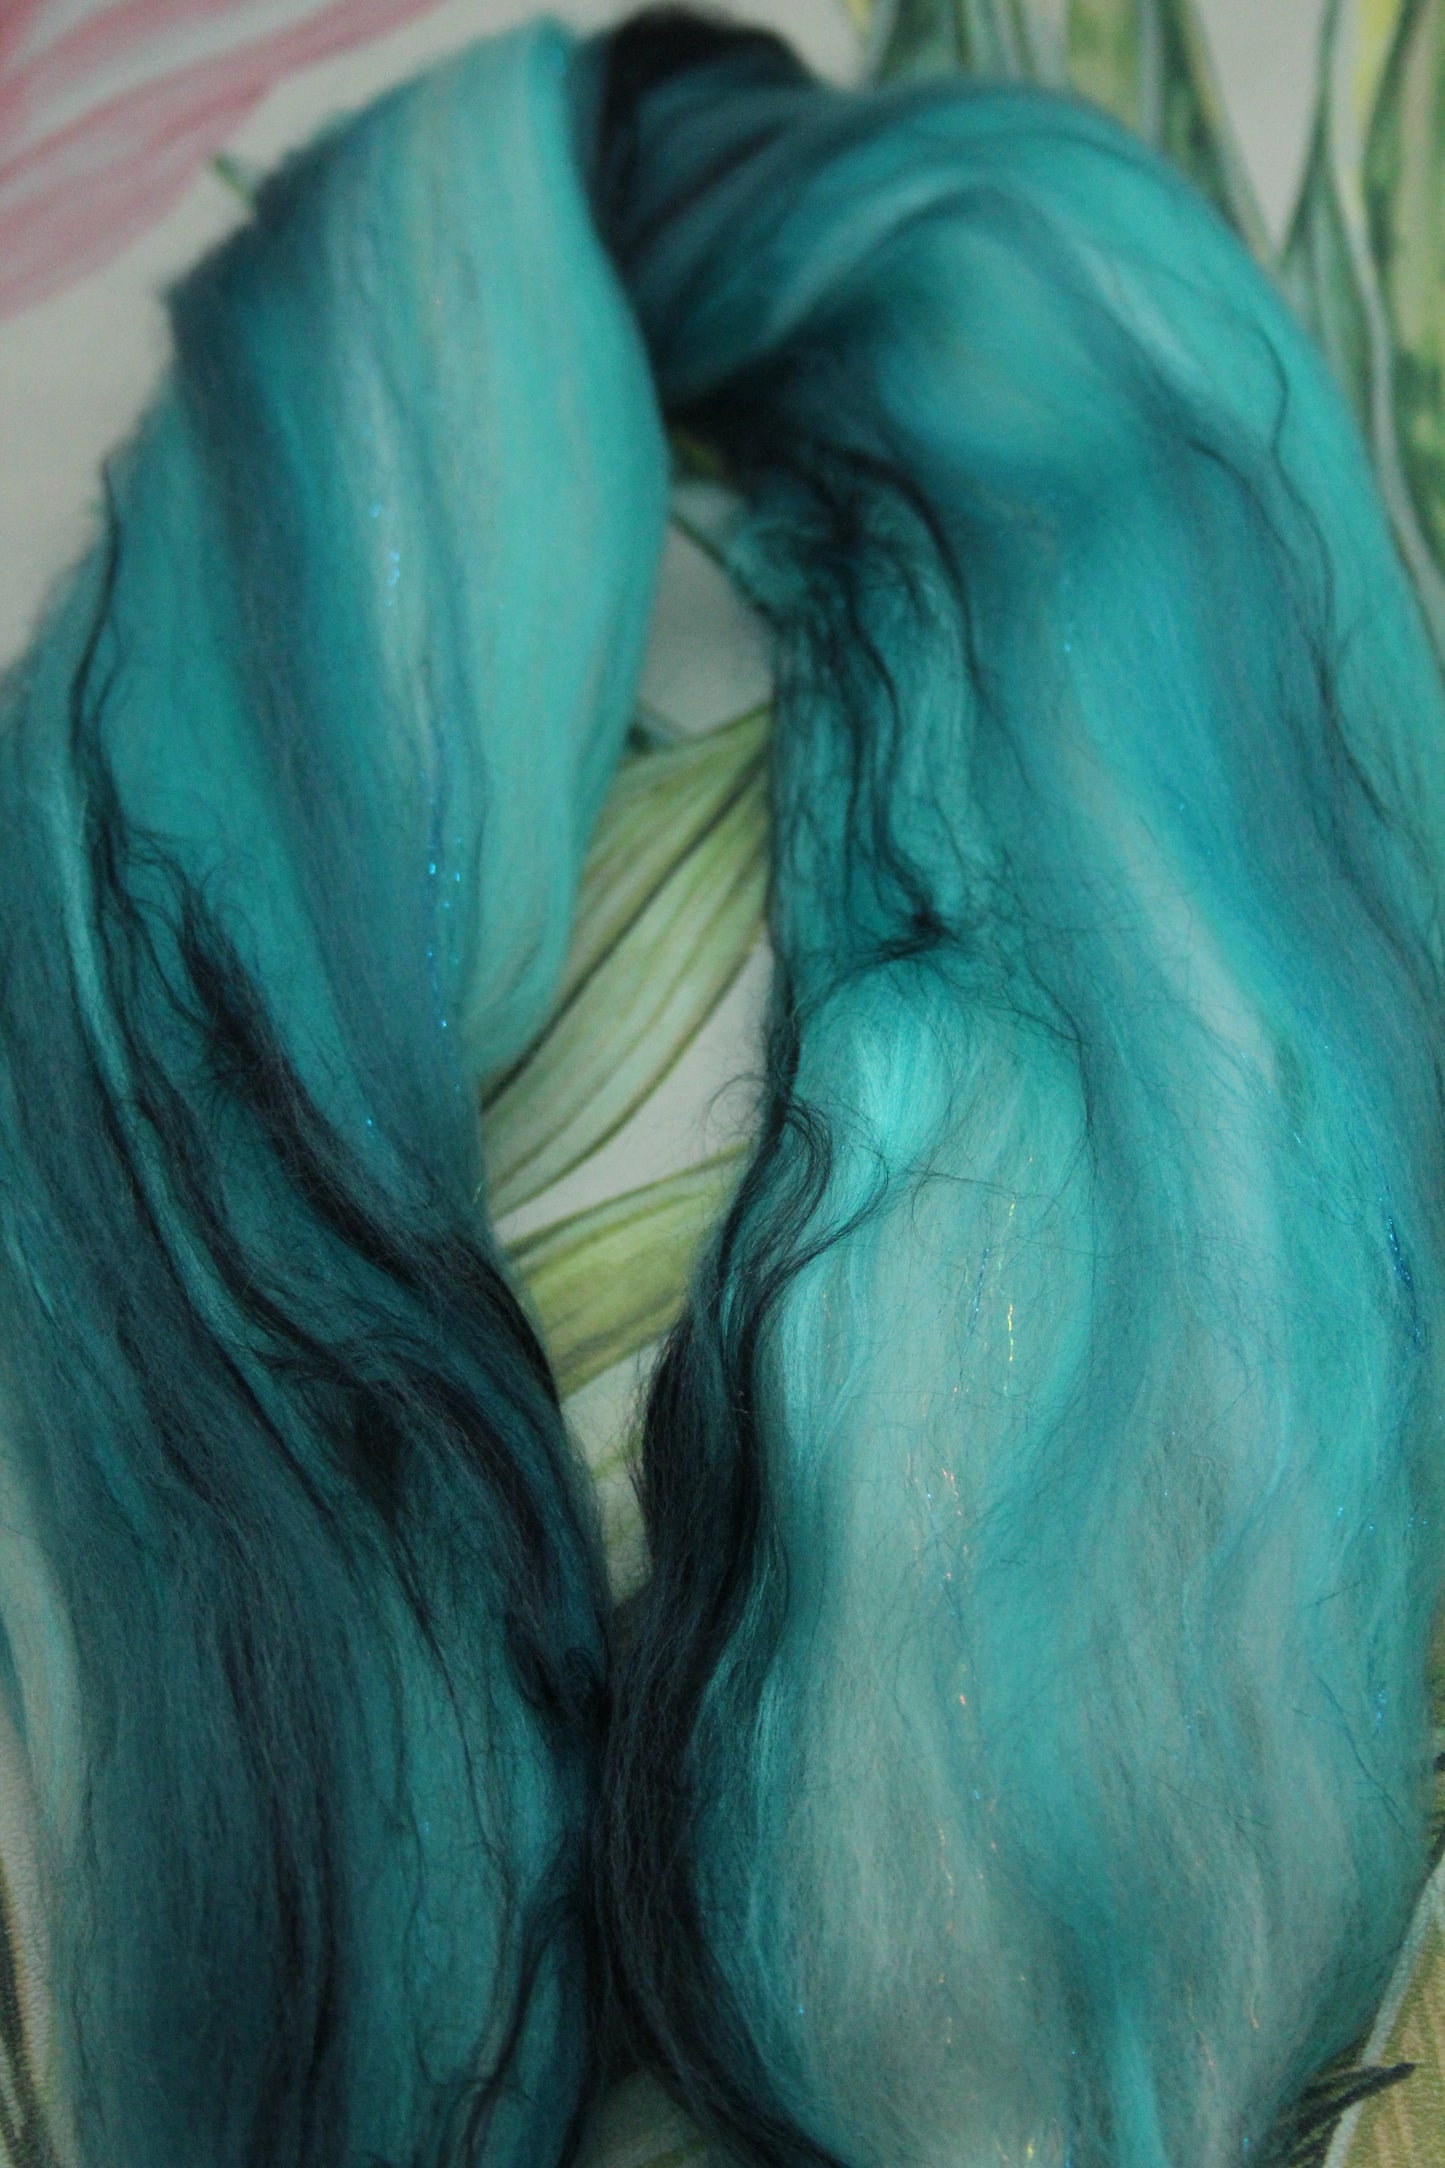 Wool Blend - Turquoise White - 16 grams / 0.5 oz  - Fibre for felting, weaving or spinning